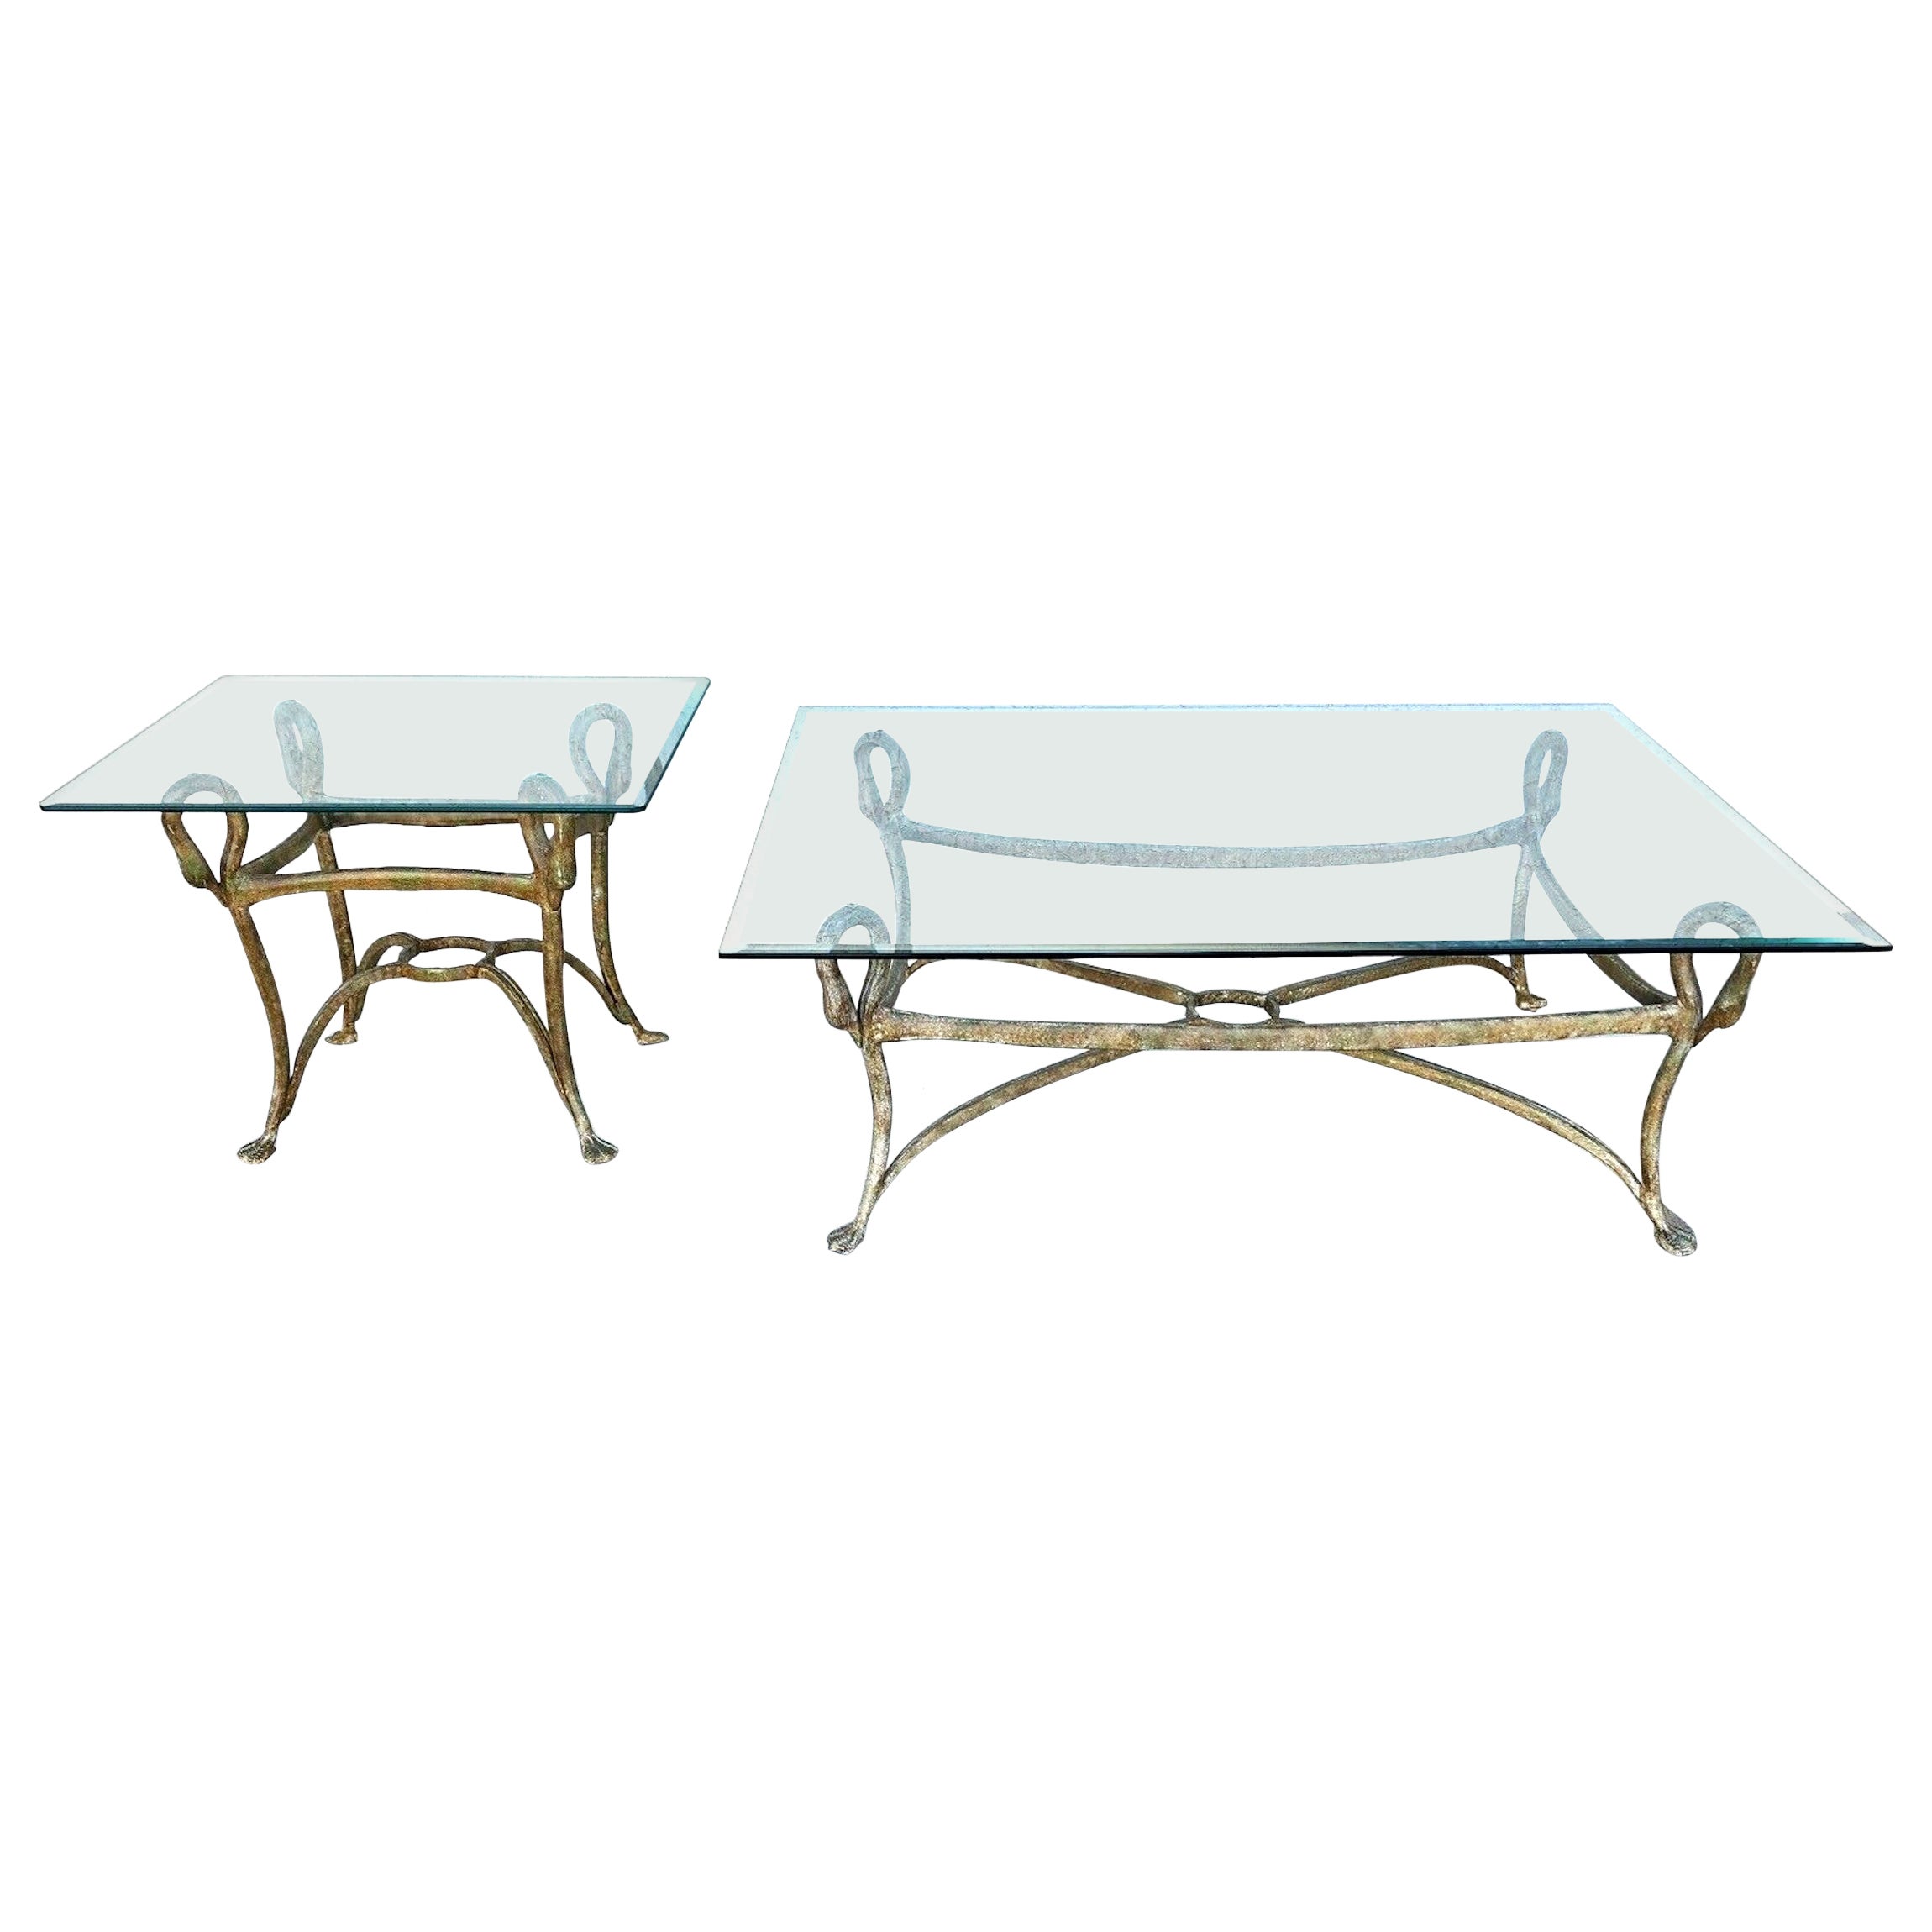 Maison Jansen Style Swan Tables Set of 2